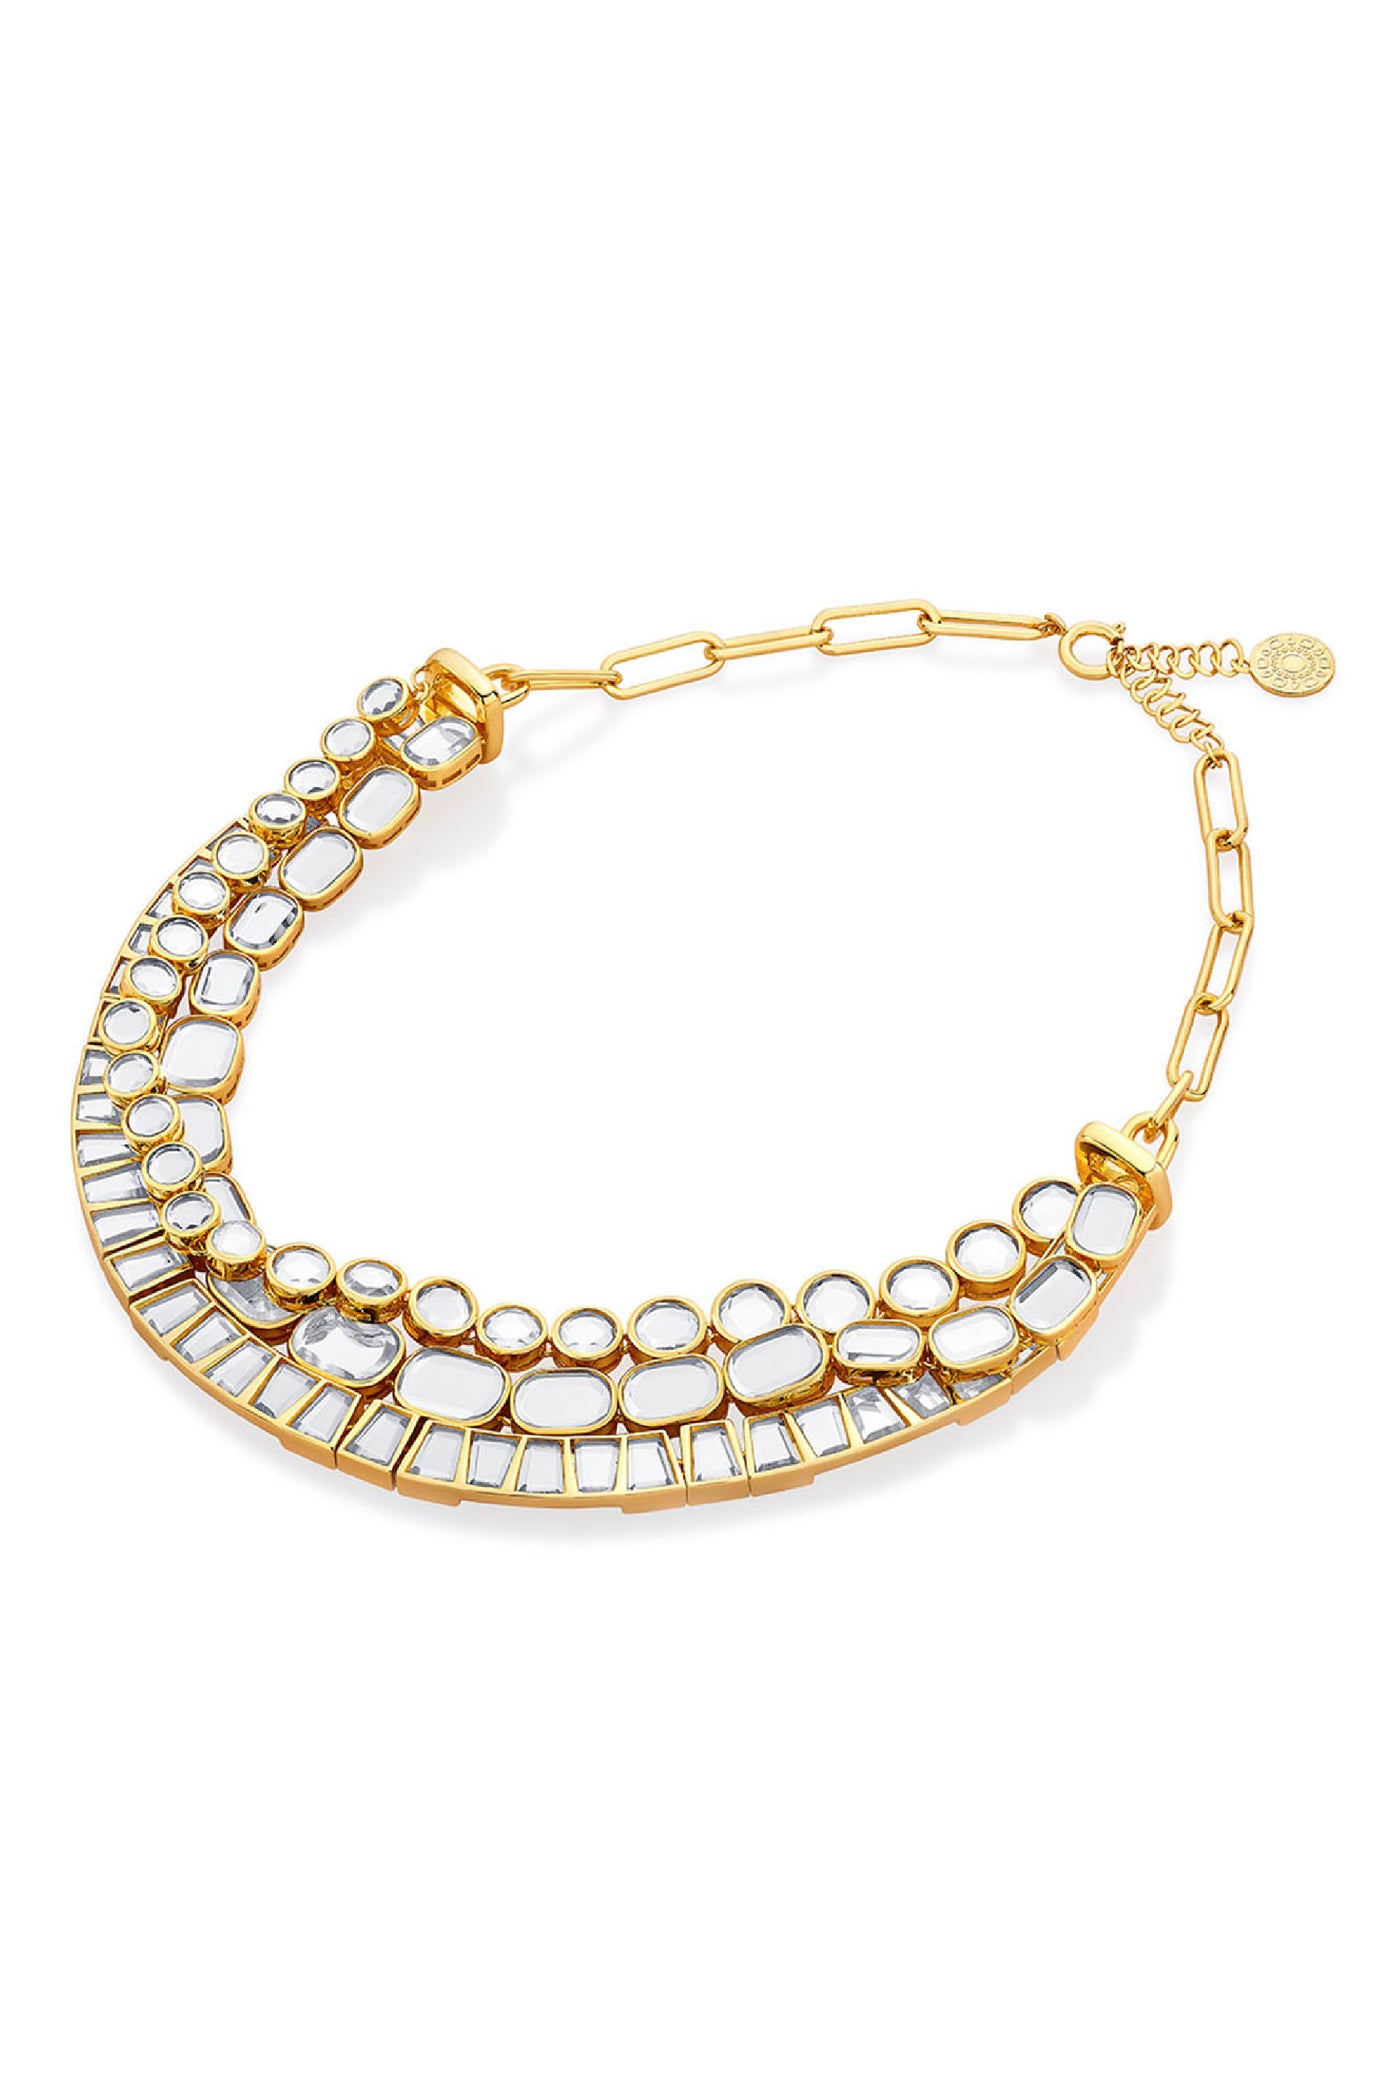 Isharya Glimmer Layered Necklace jewellery indian designer wear online shopping melange singapore